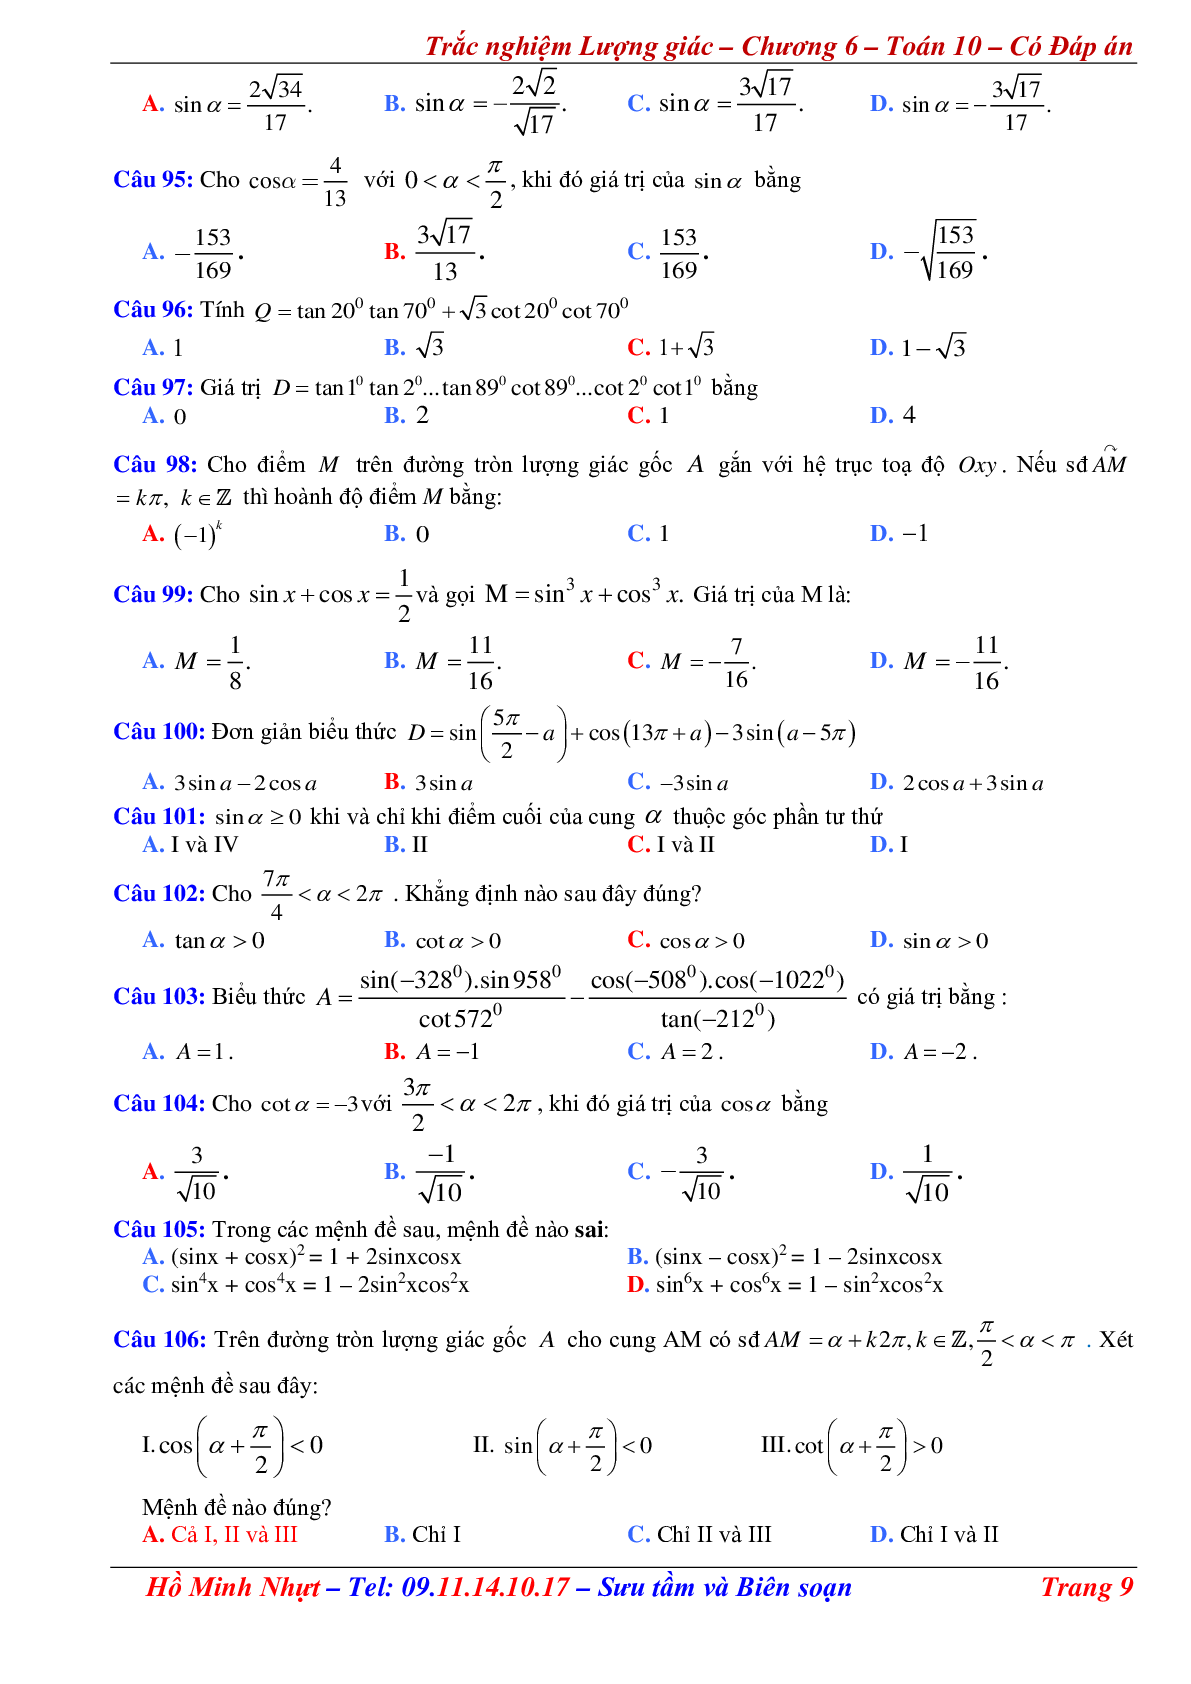 310 Bài tập trắc nghiệm công thức lượng giác có đáp án (trang 9)